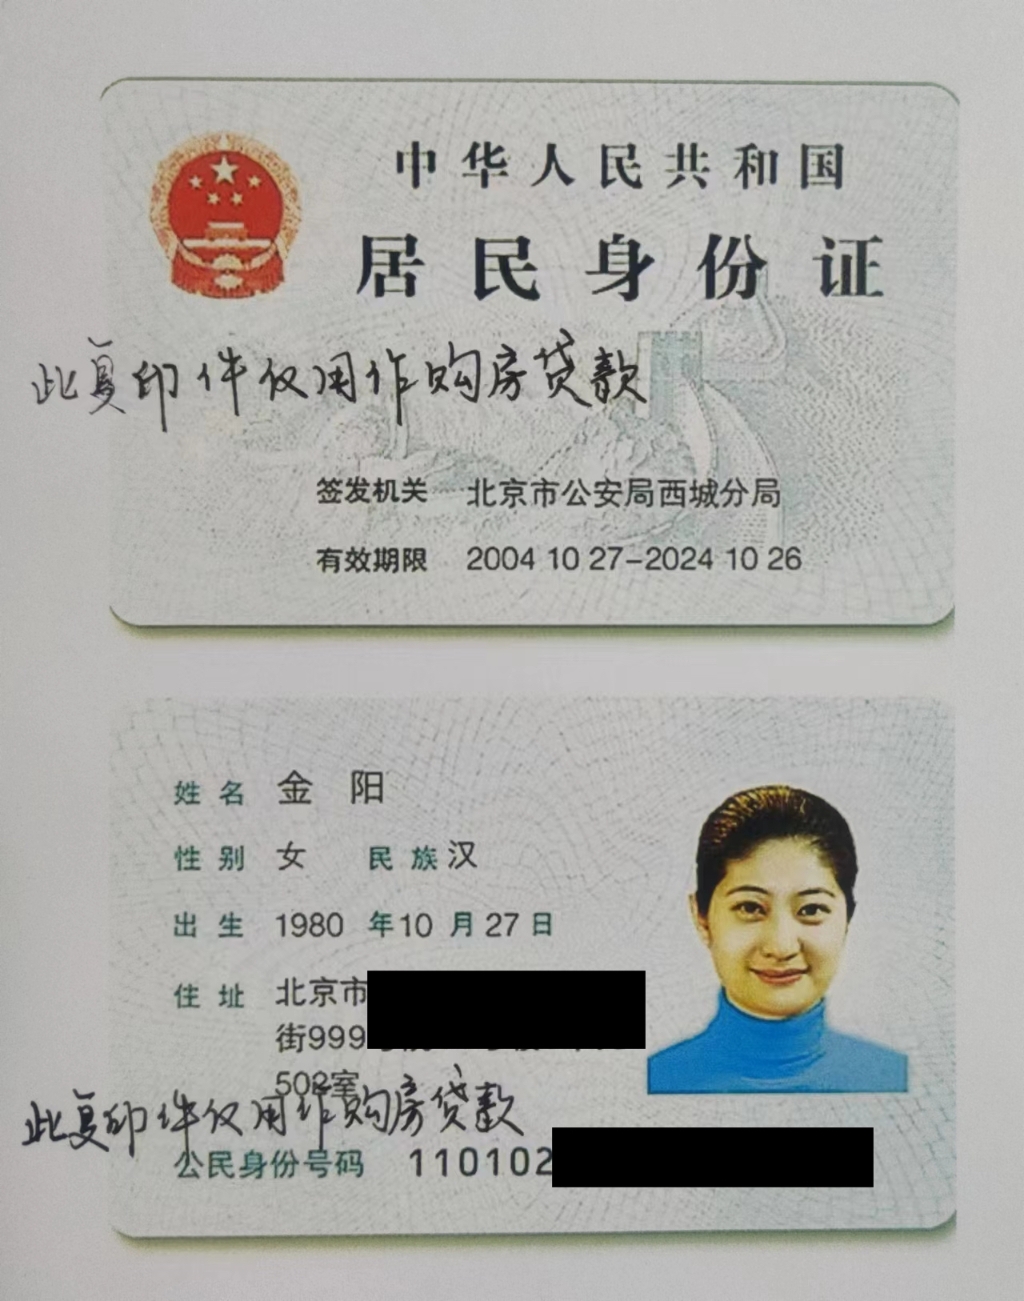 使用身份证复印件最好写上用途 重庆警方将集中打击涉身份证证违法